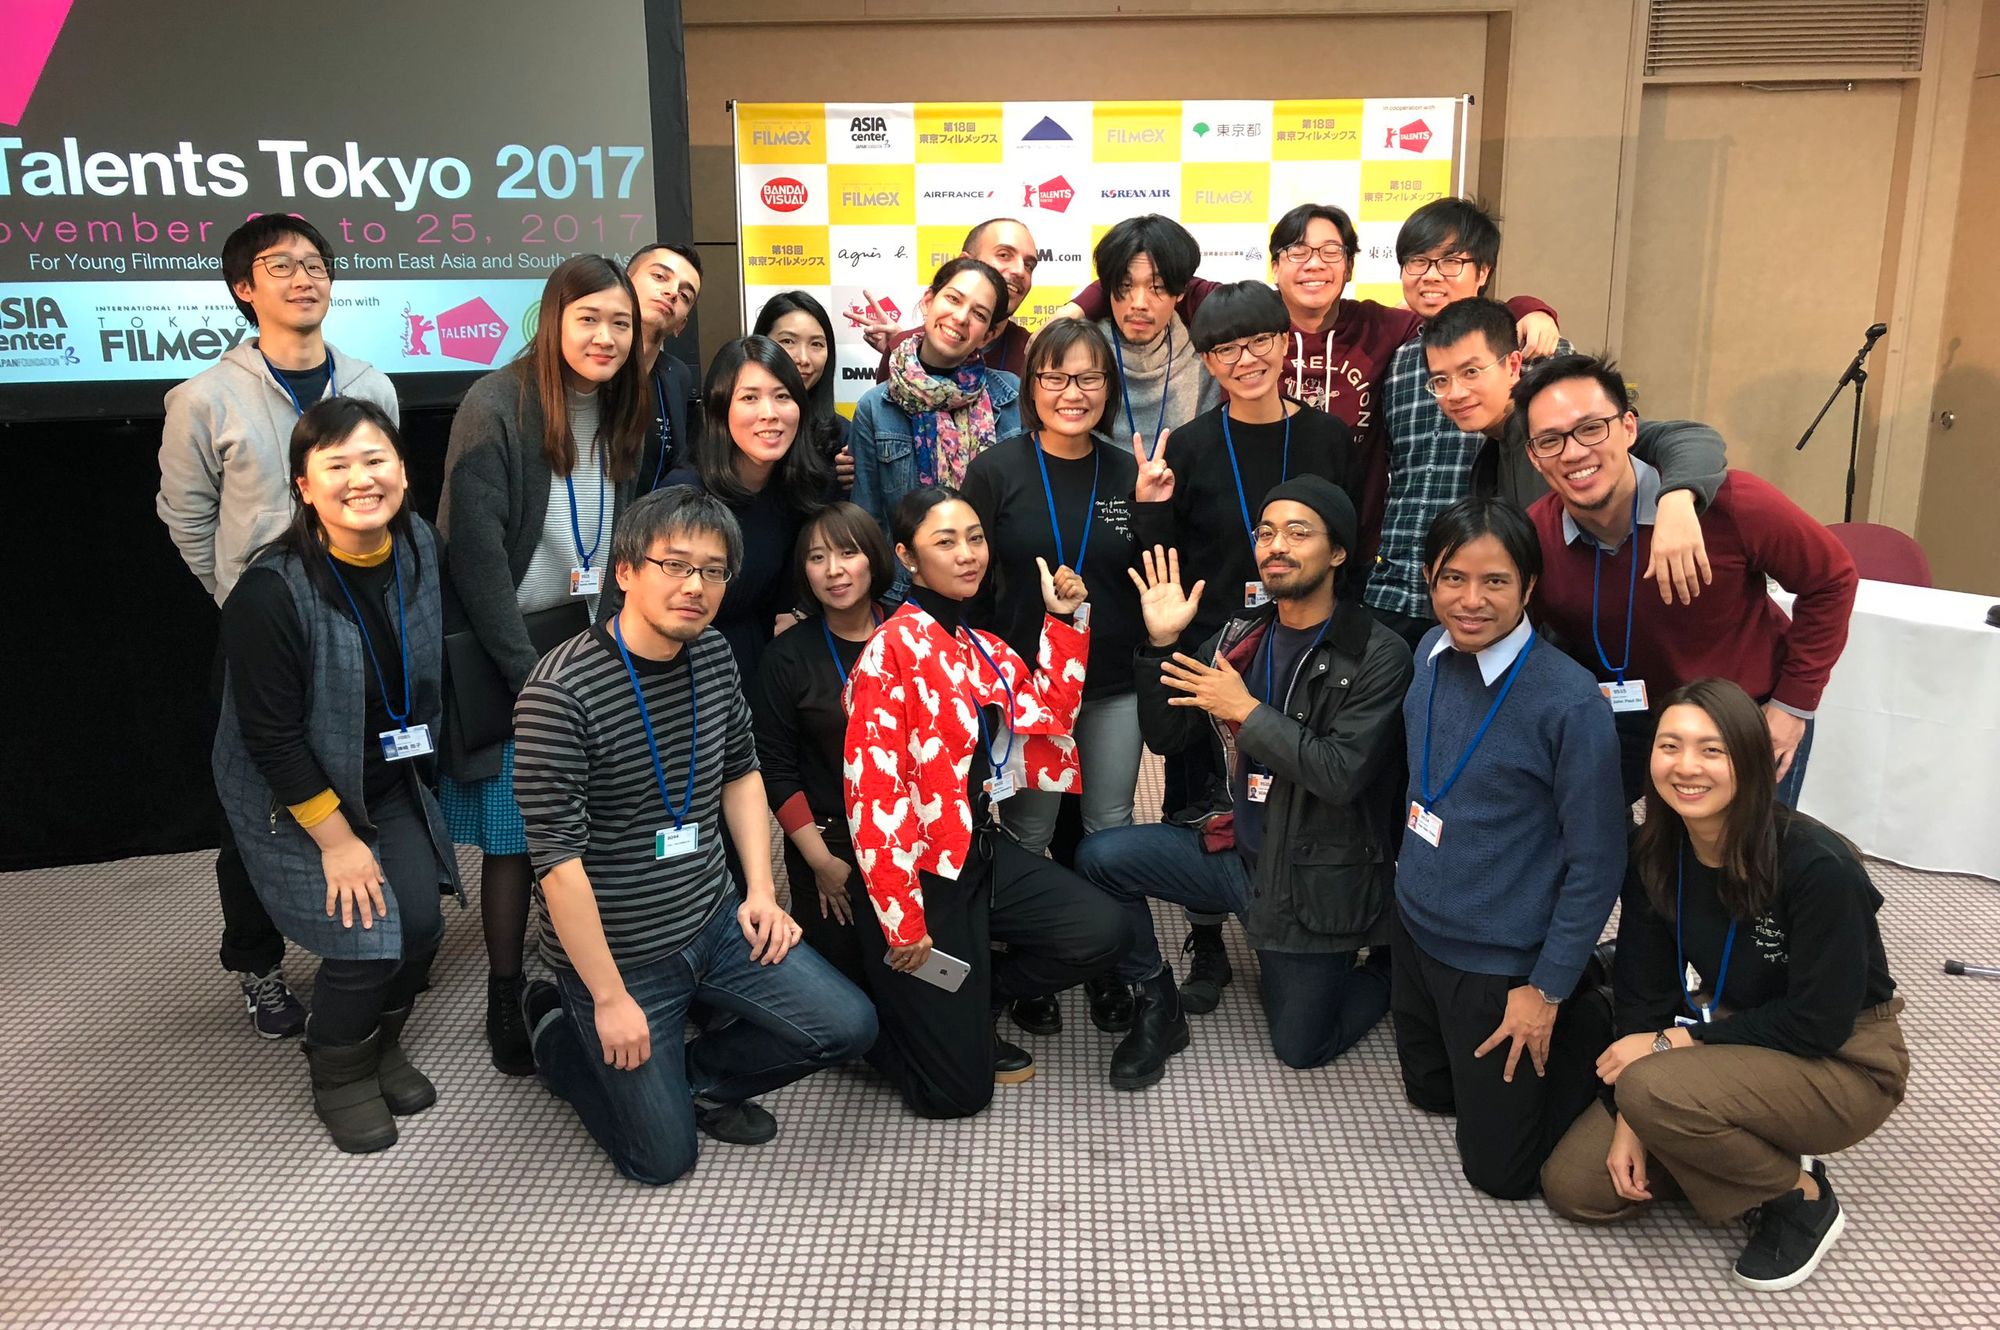 The participants and mentors of Talents Tokyo 2017 